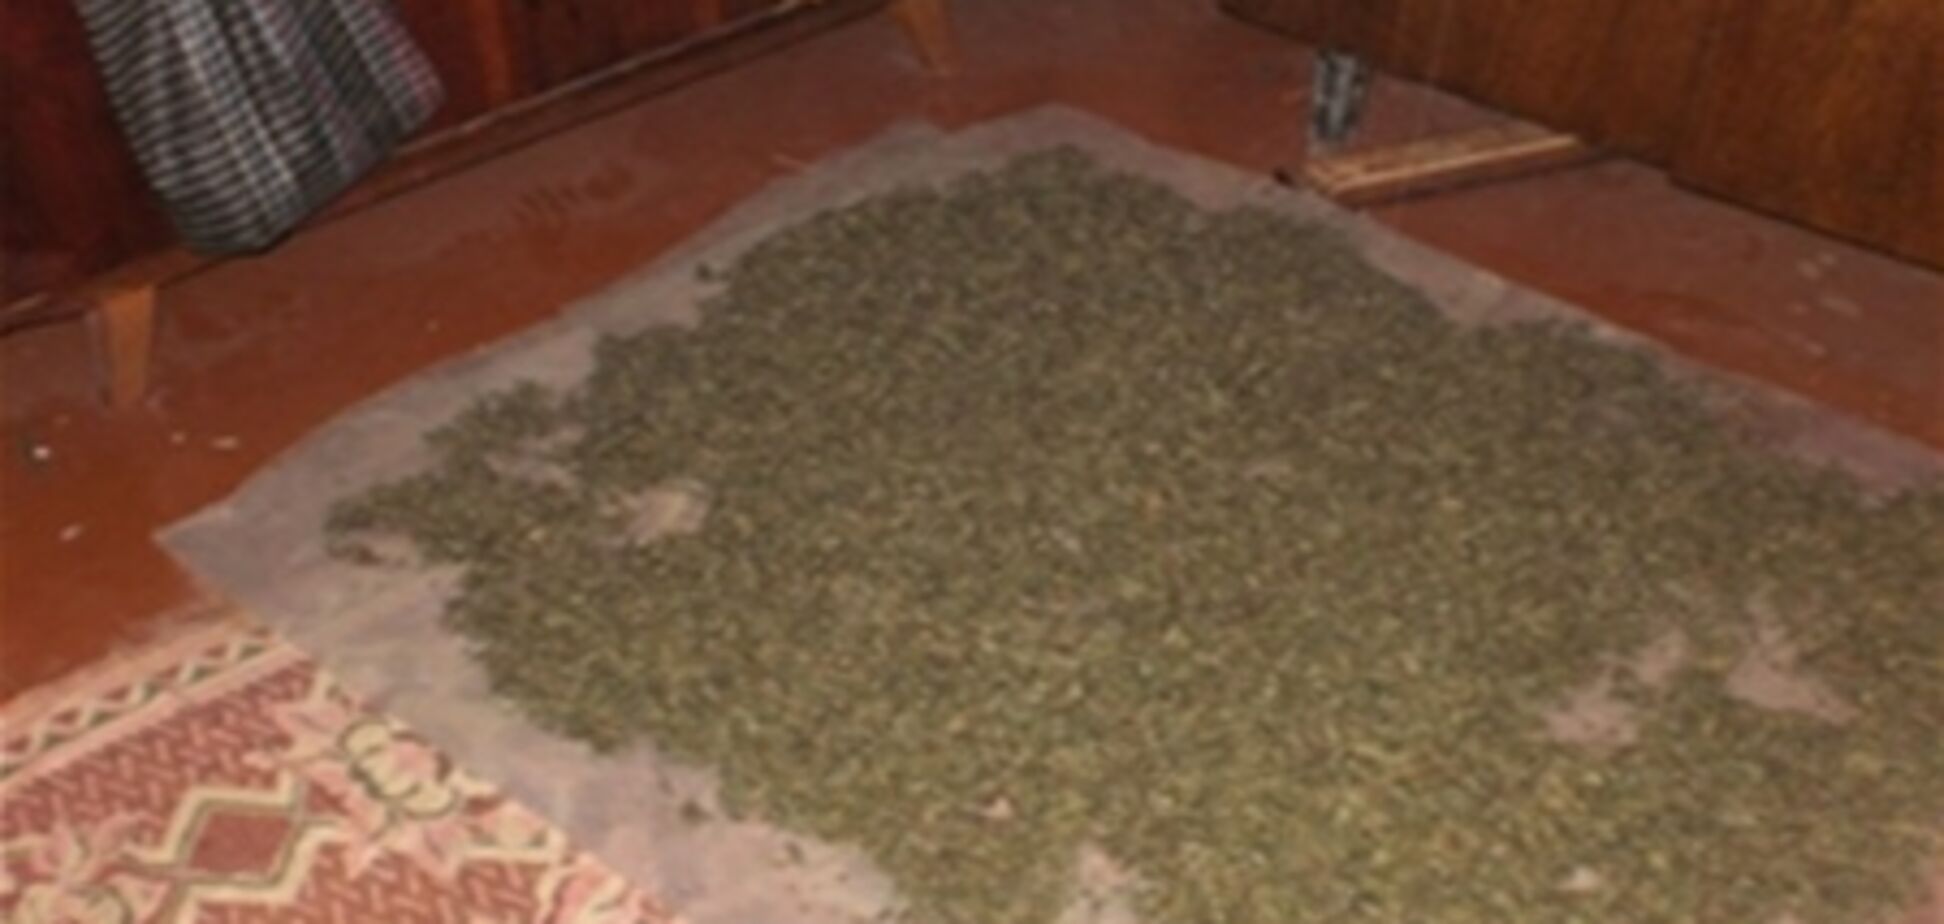 Харьковская милиция нашла в квартире ковер из 4,5 килограмма конопли